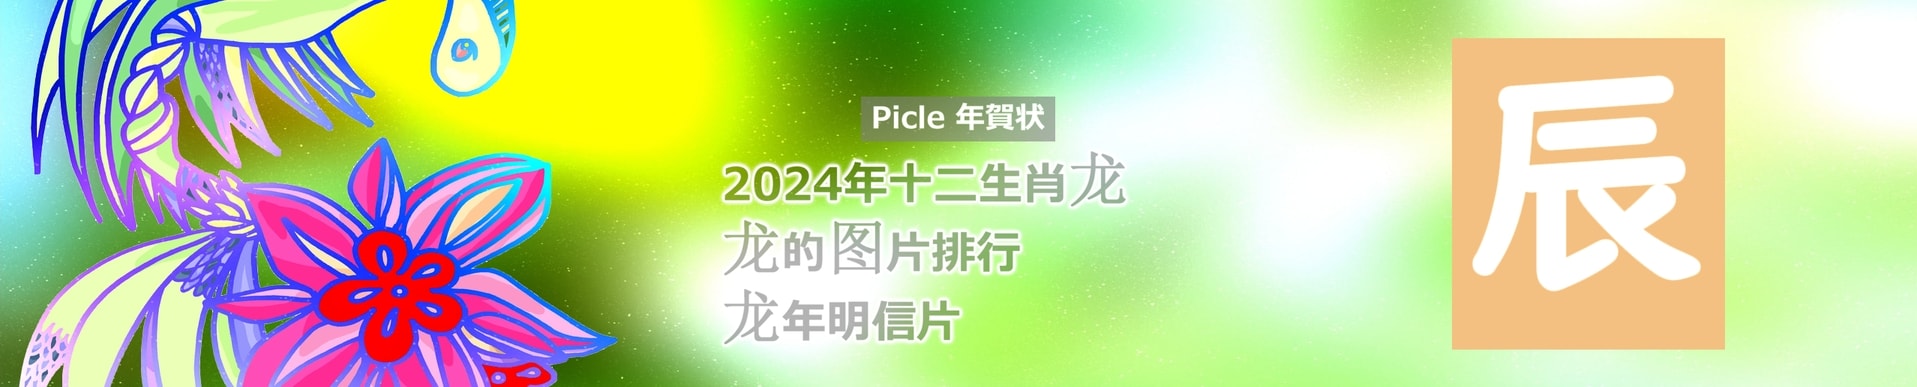 Picle年賀状 2024生肖龙艺术免费图片素材原创模板卡片图片打印下载